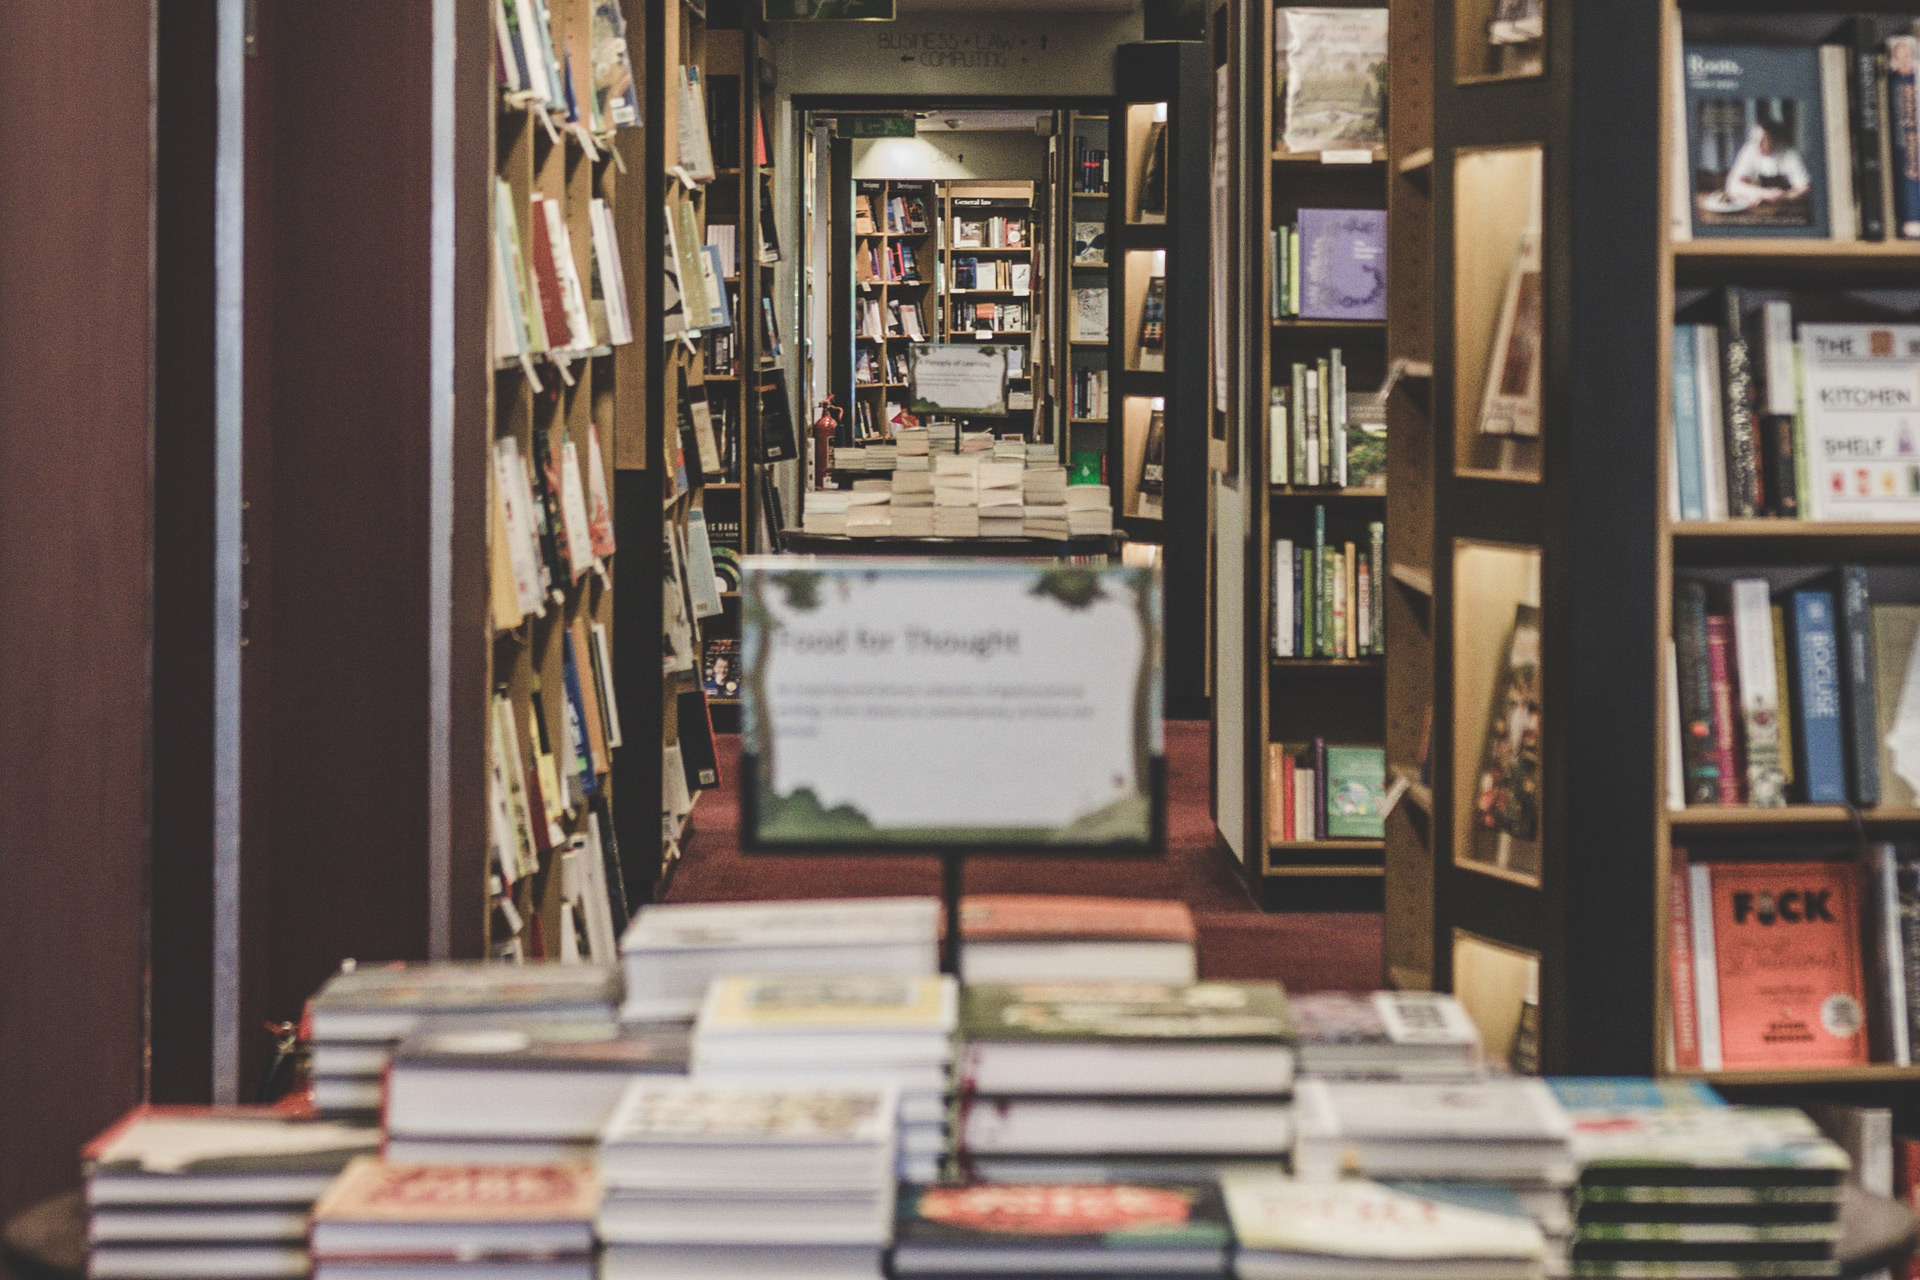 Inside of Waterstones bookshop